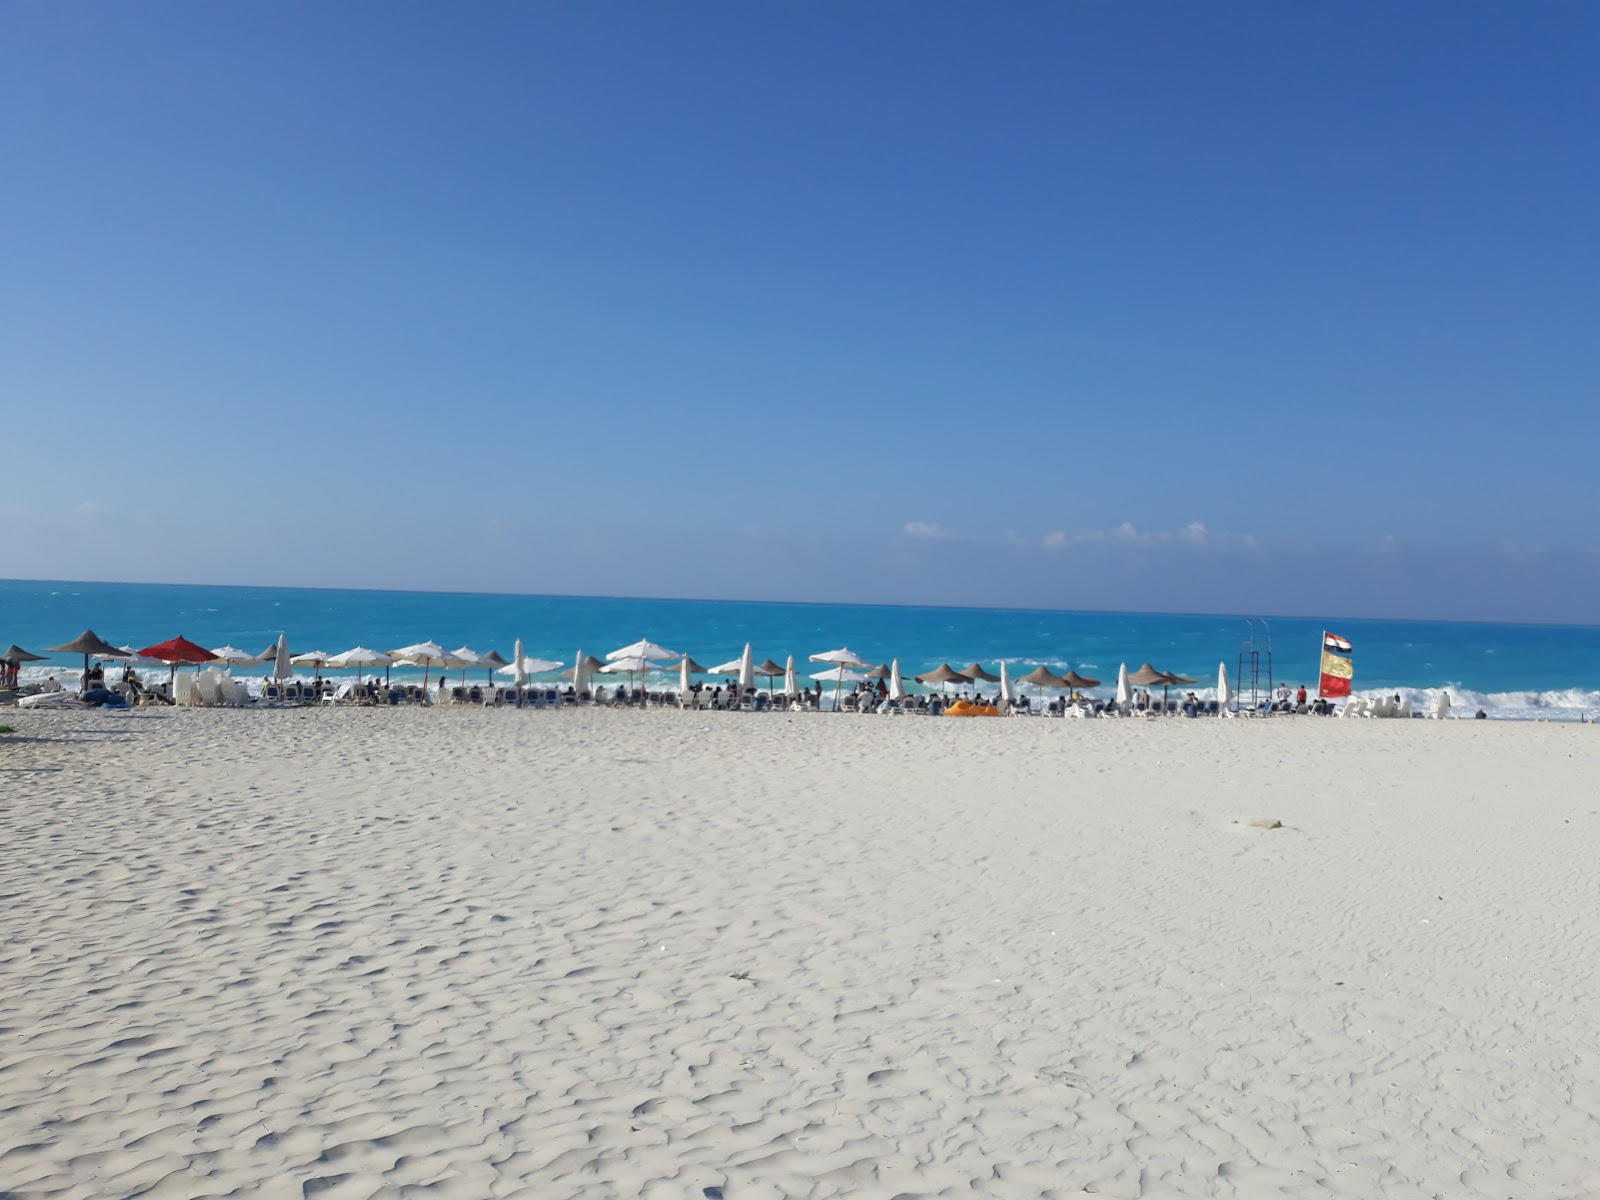 Photo de Assiut University Beach - endroit populaire parmi les connaisseurs de la détente